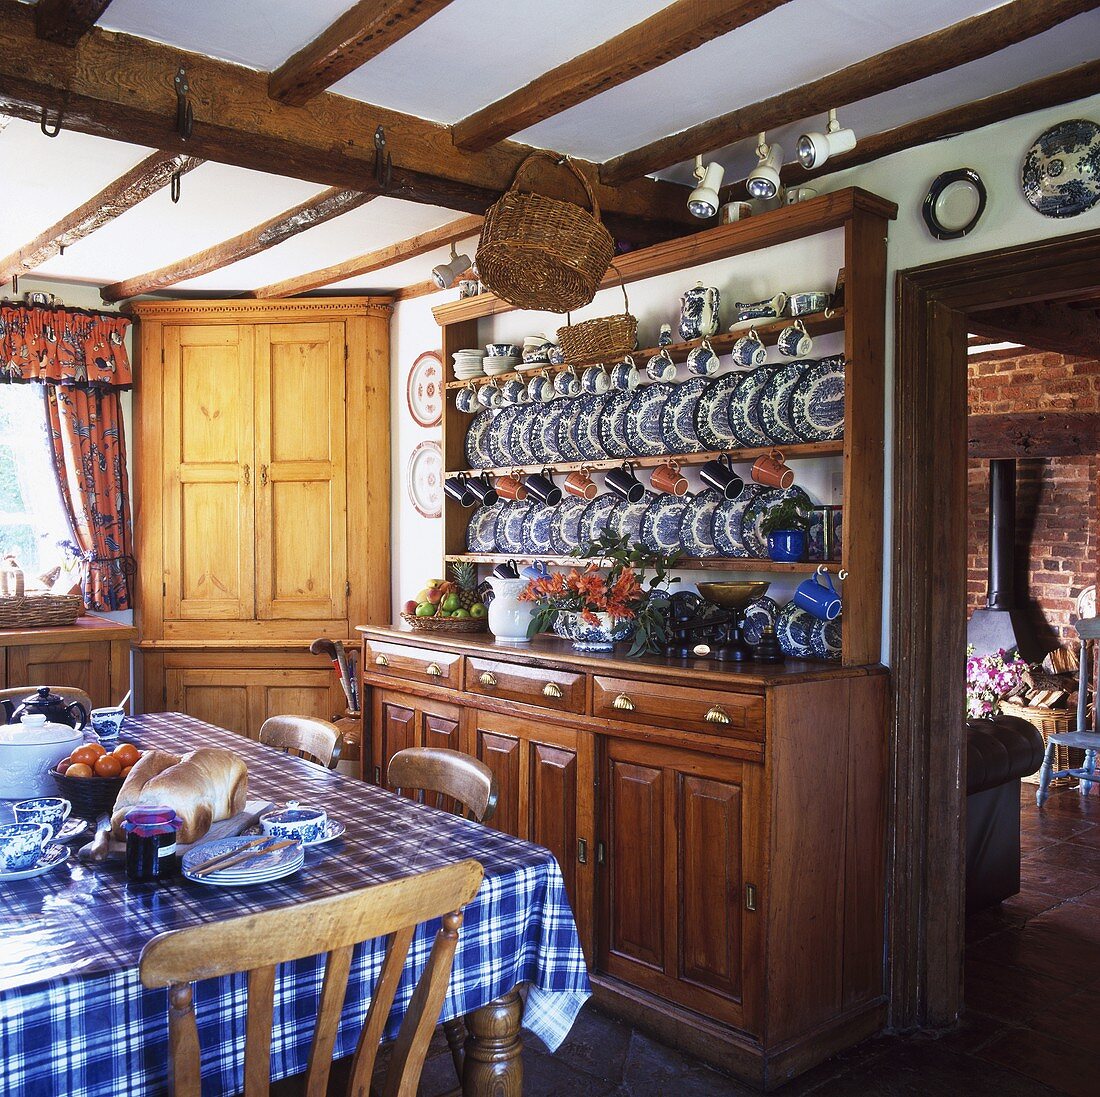 Landhausküche mit kariertem Tischtuch auf dem Esstisch und Geschirrschrank mit weiss blauen Tellern